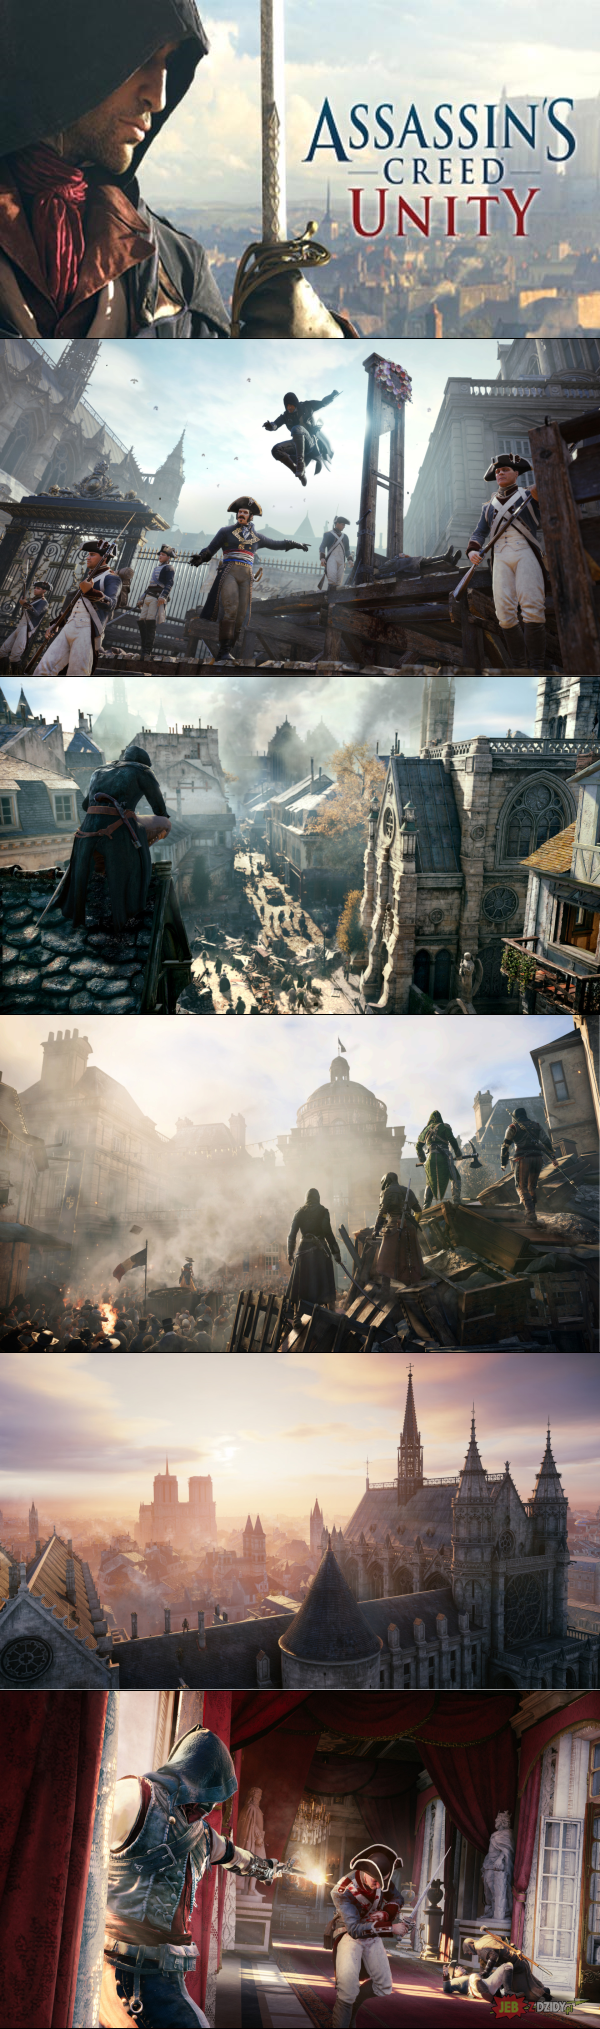 Assassin’s Creed Unity na PC za darmo w sklepie Ubisoftu 